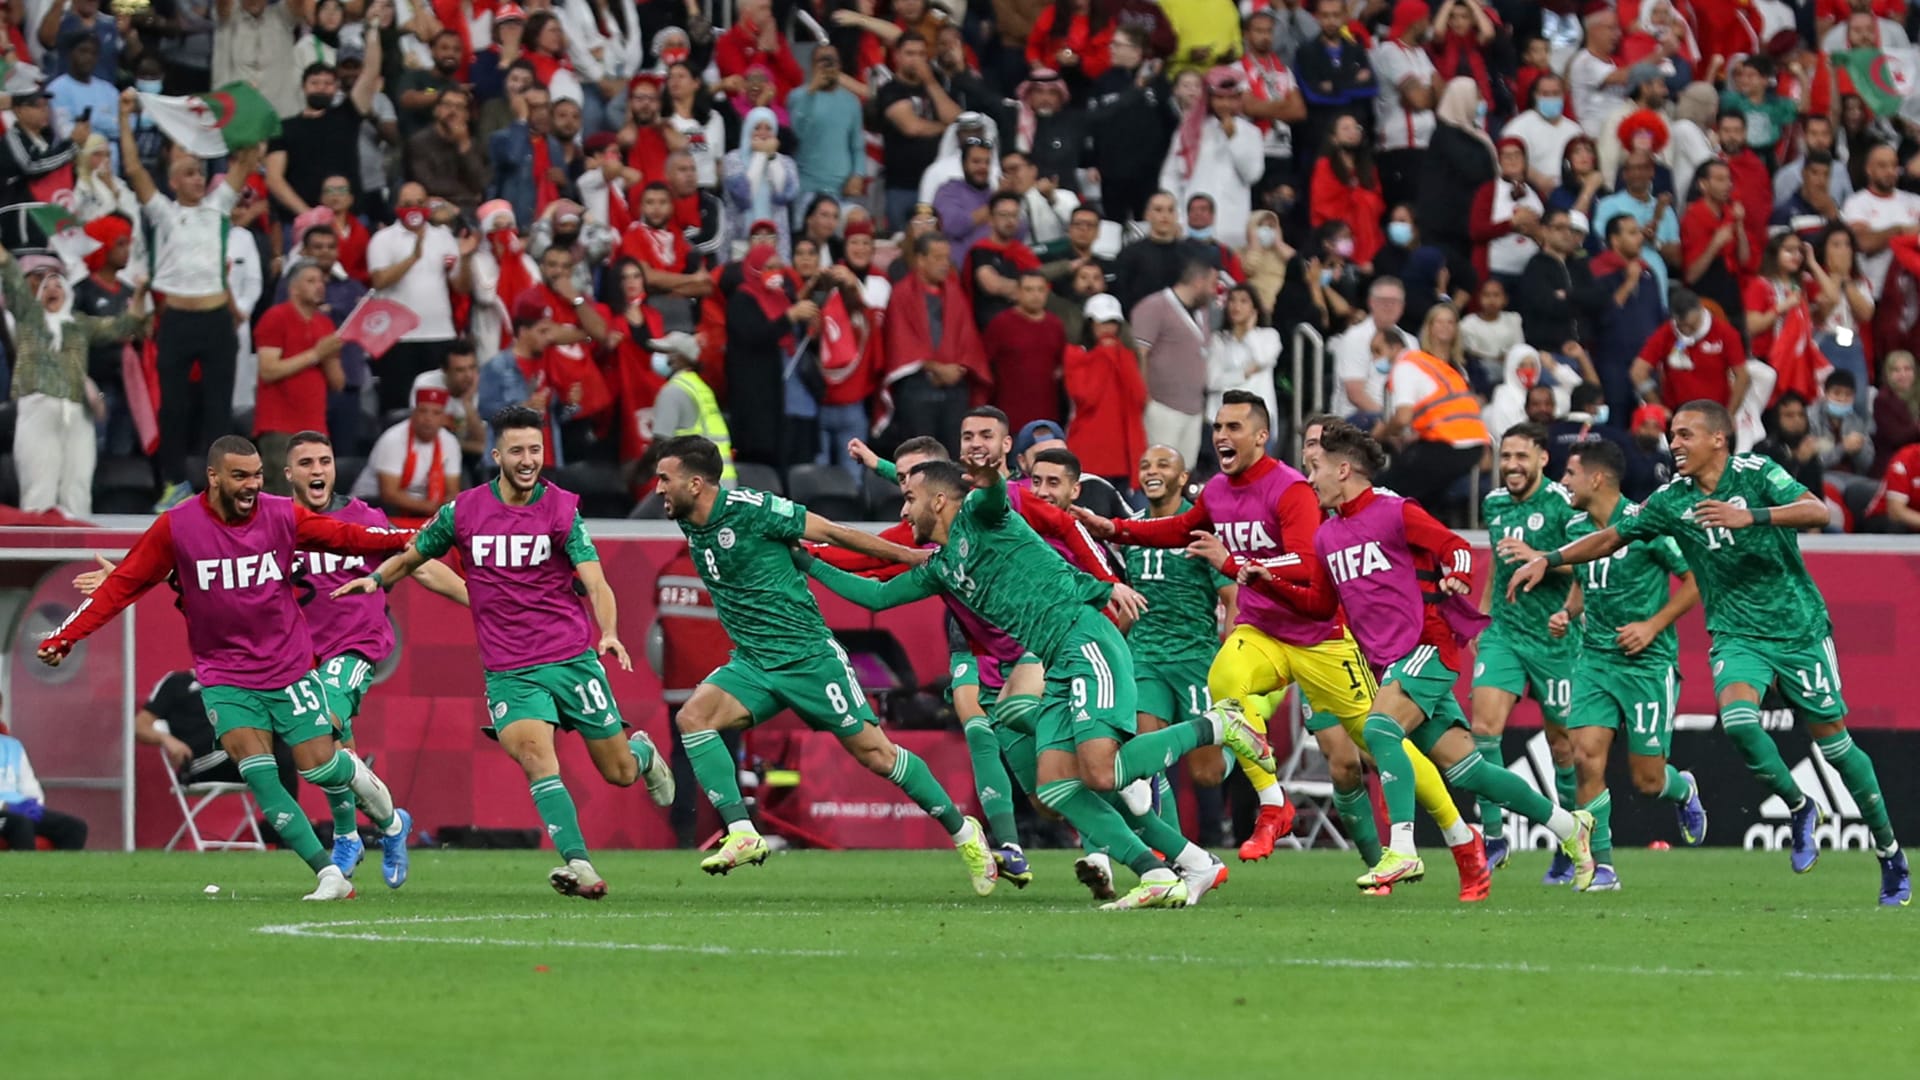 الجزائر بطلة كأس العرب للمرة الأولى في تاريخها بعد الفوز على تونس